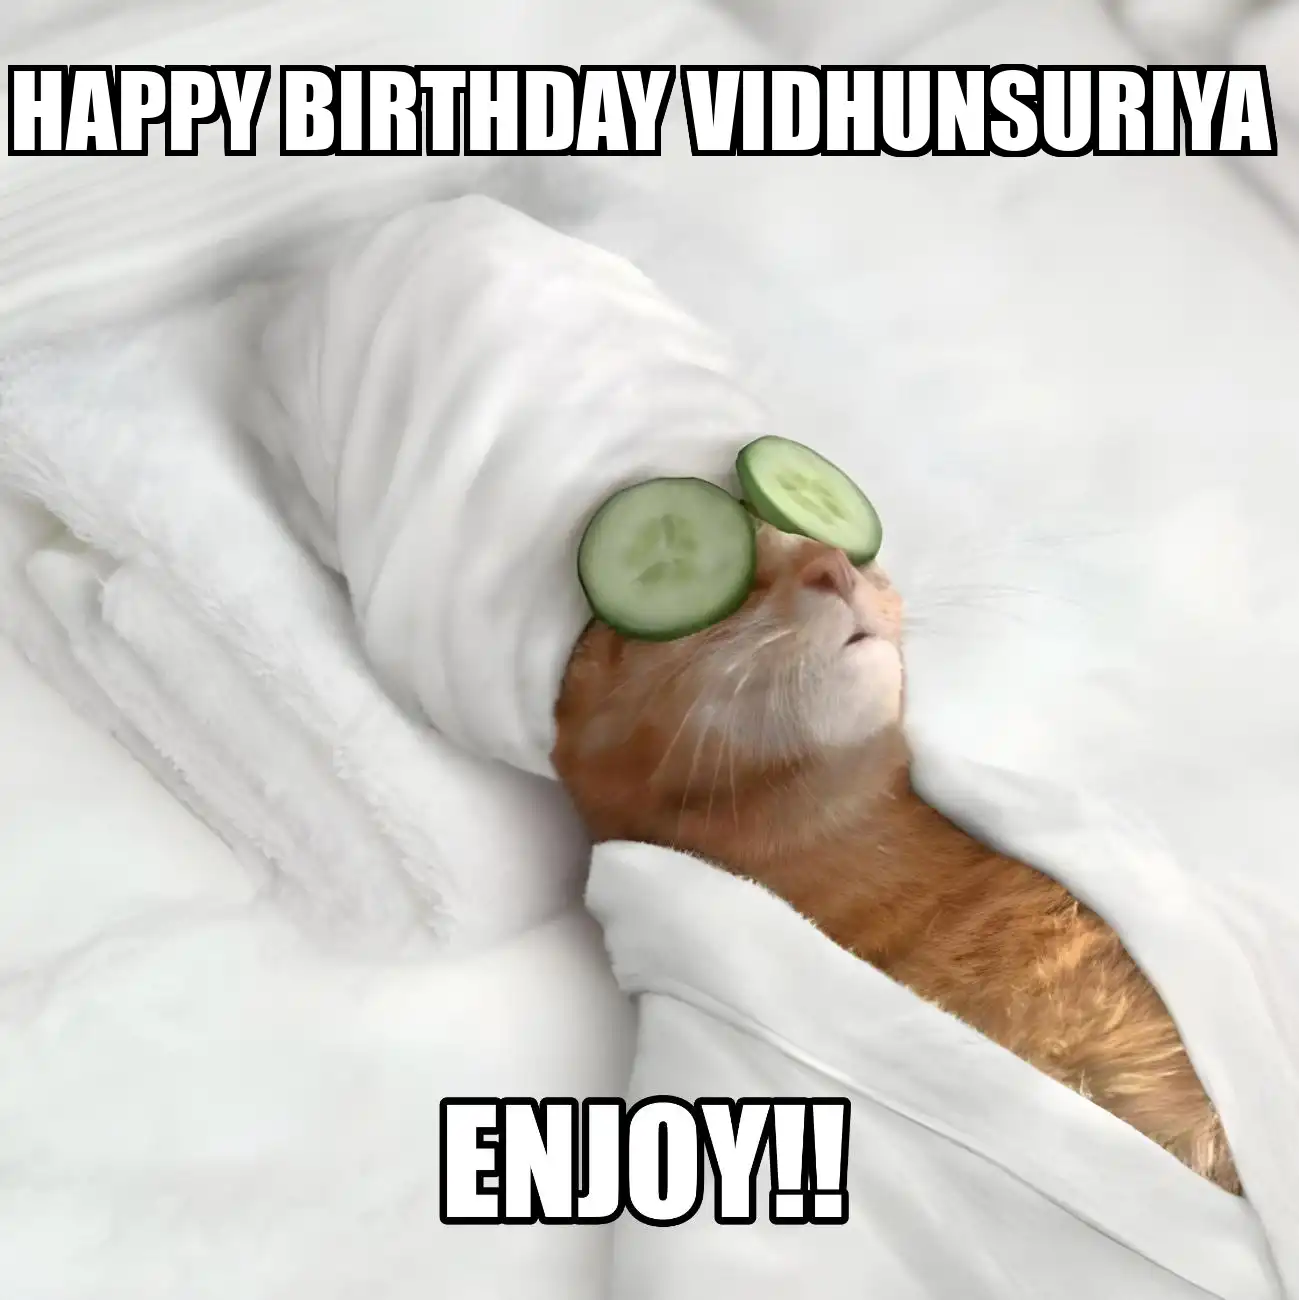 Happy Birthday Vidhunsuriya Enjoy Cat Meme